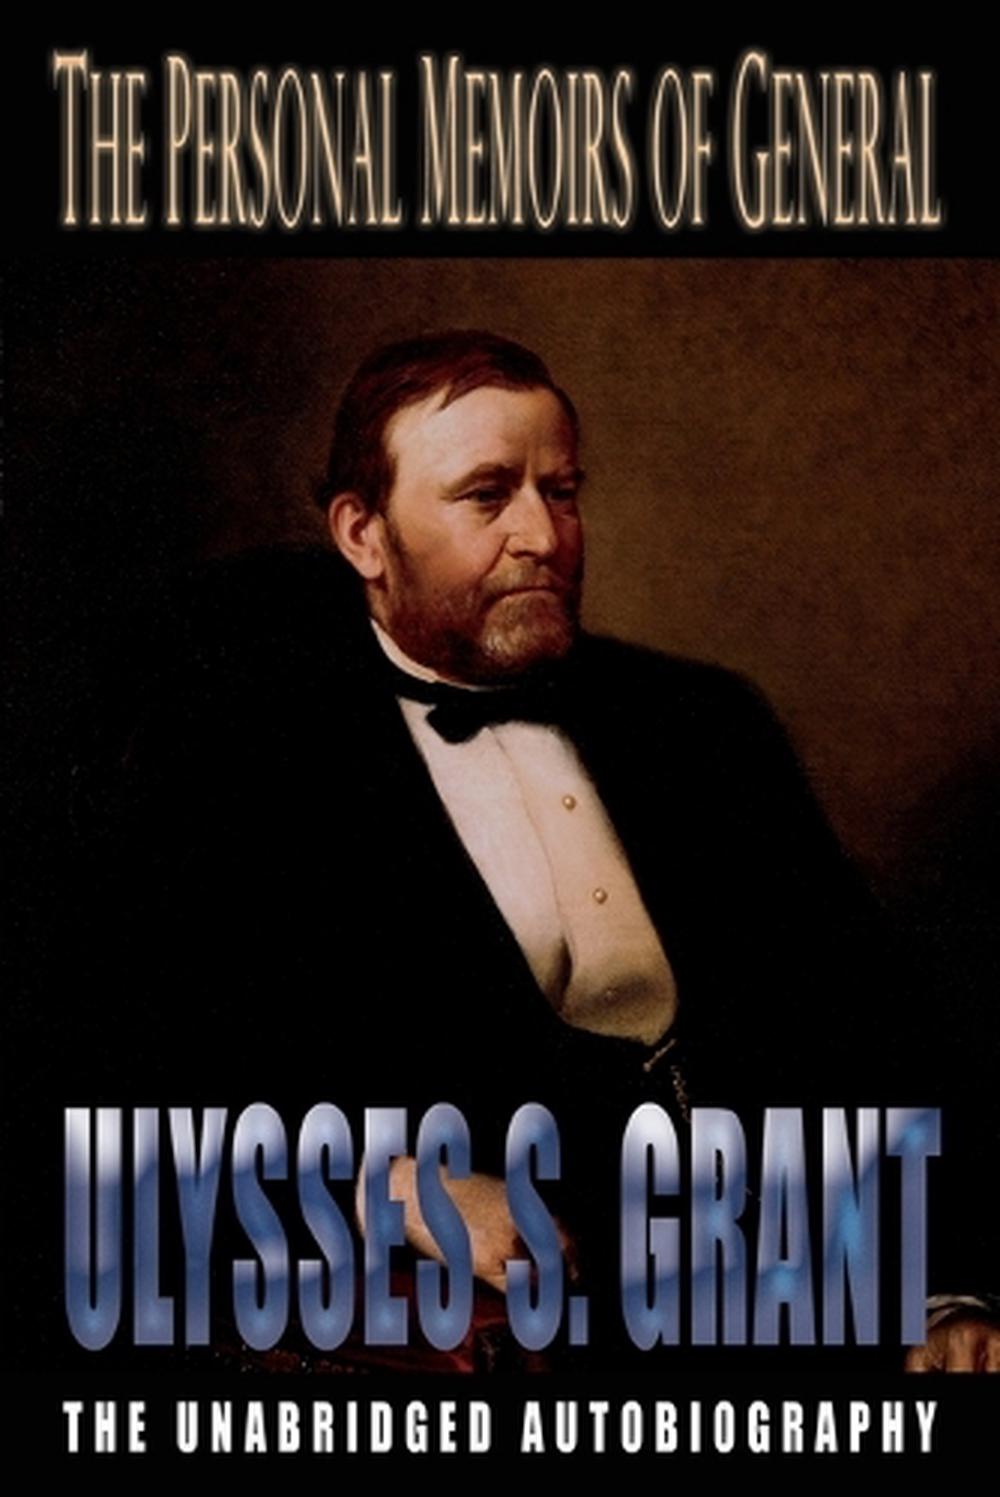 personal memoirs of ulysses s.grant